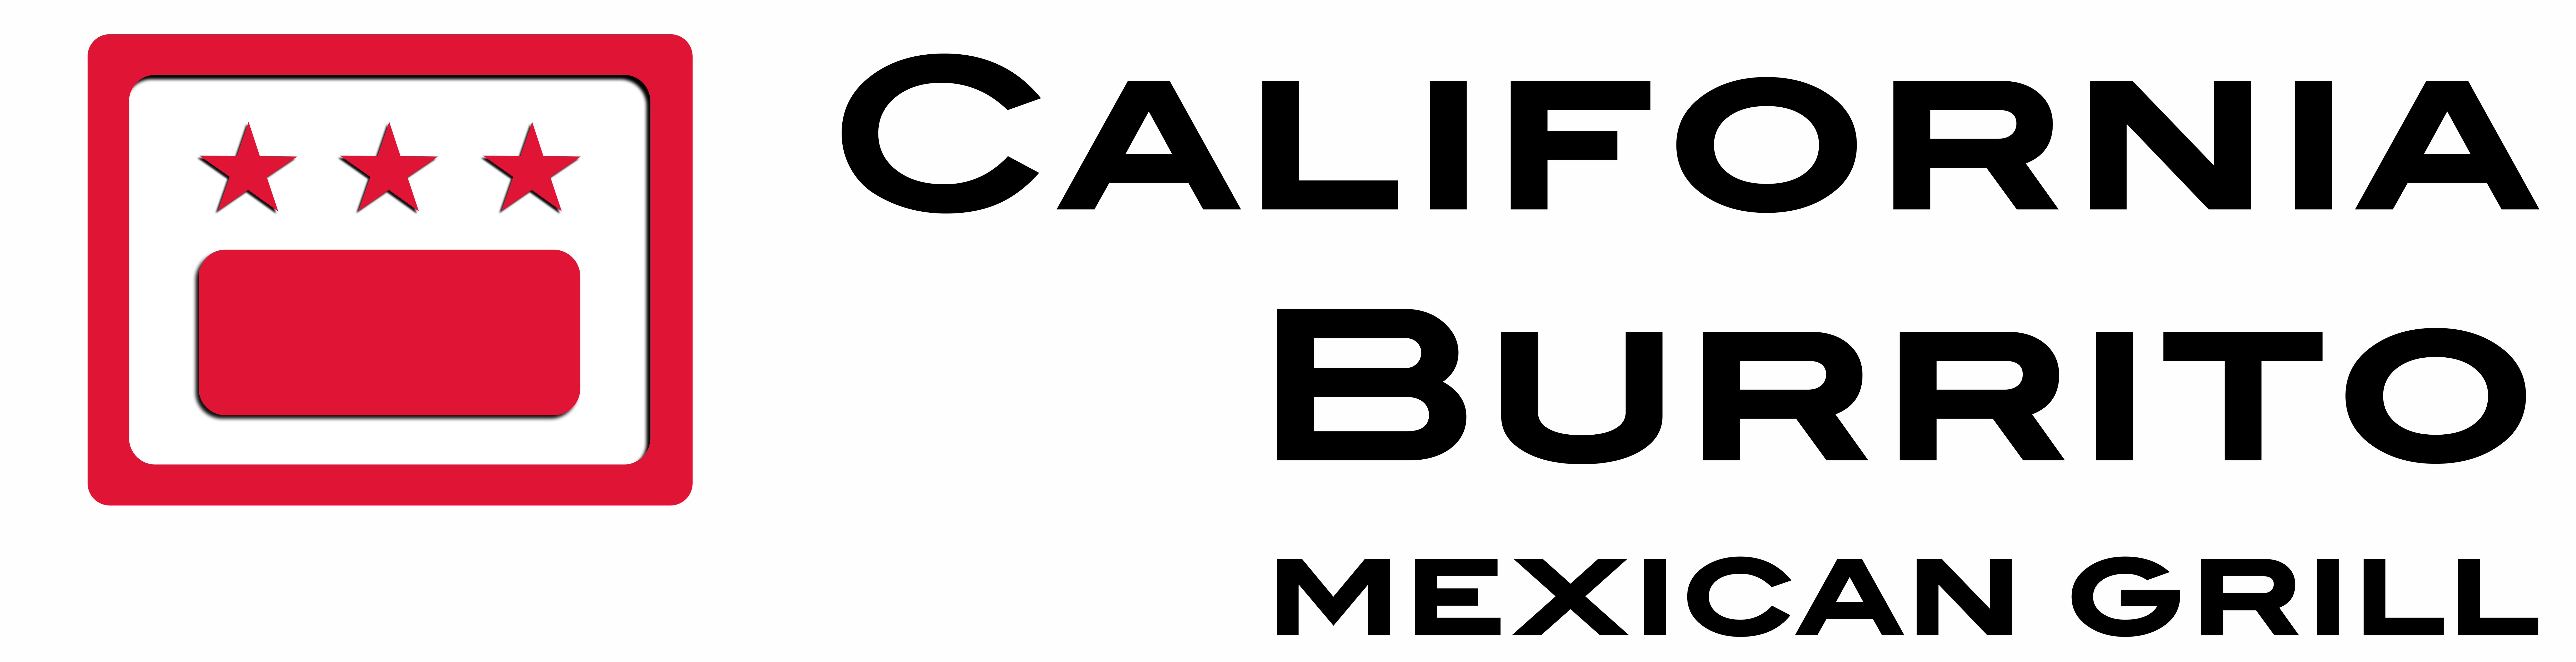 california burrito